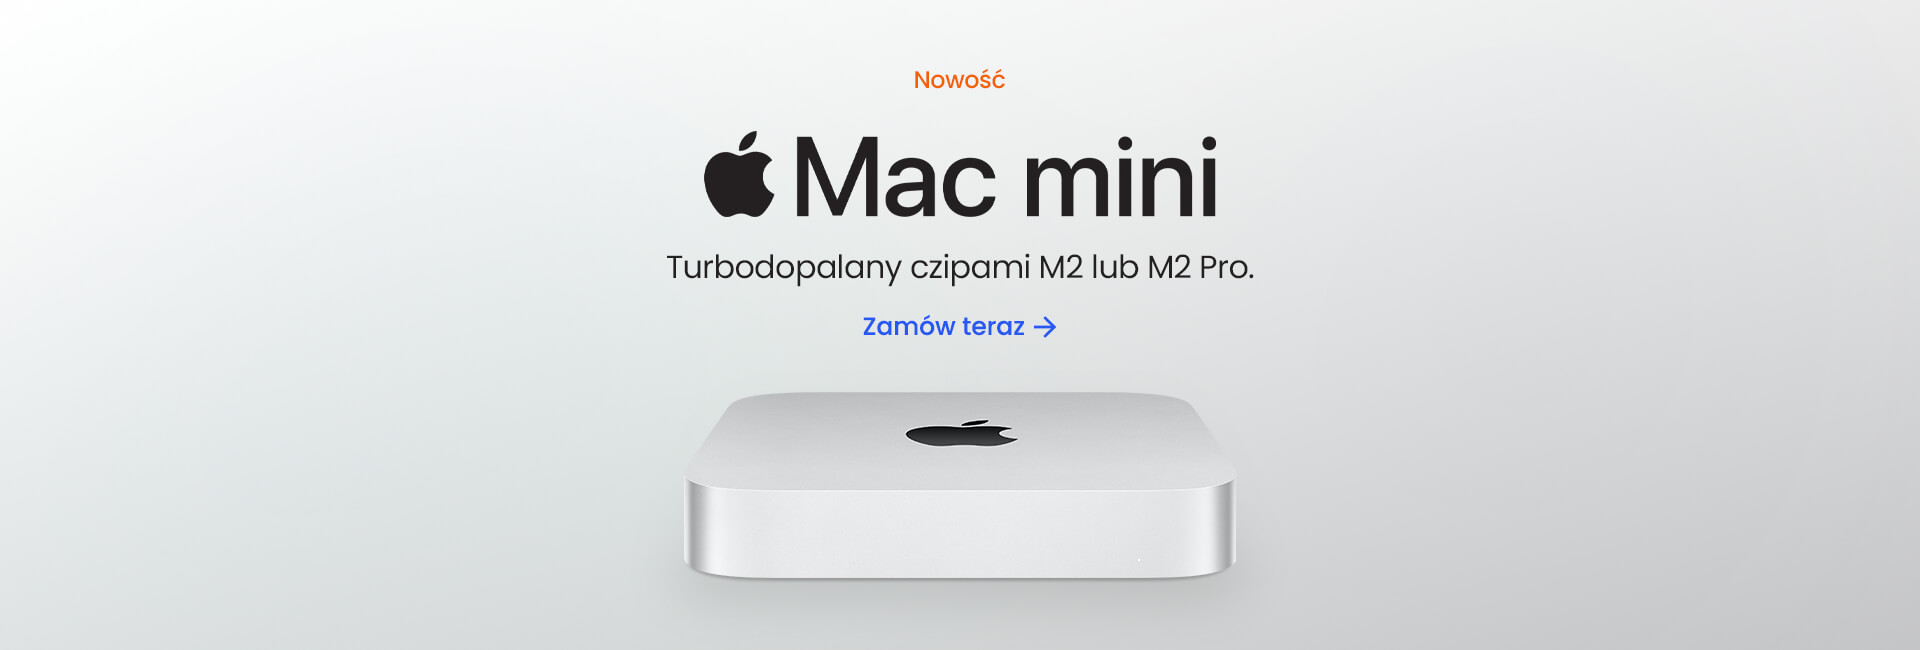 Nowość - Mac mini M2